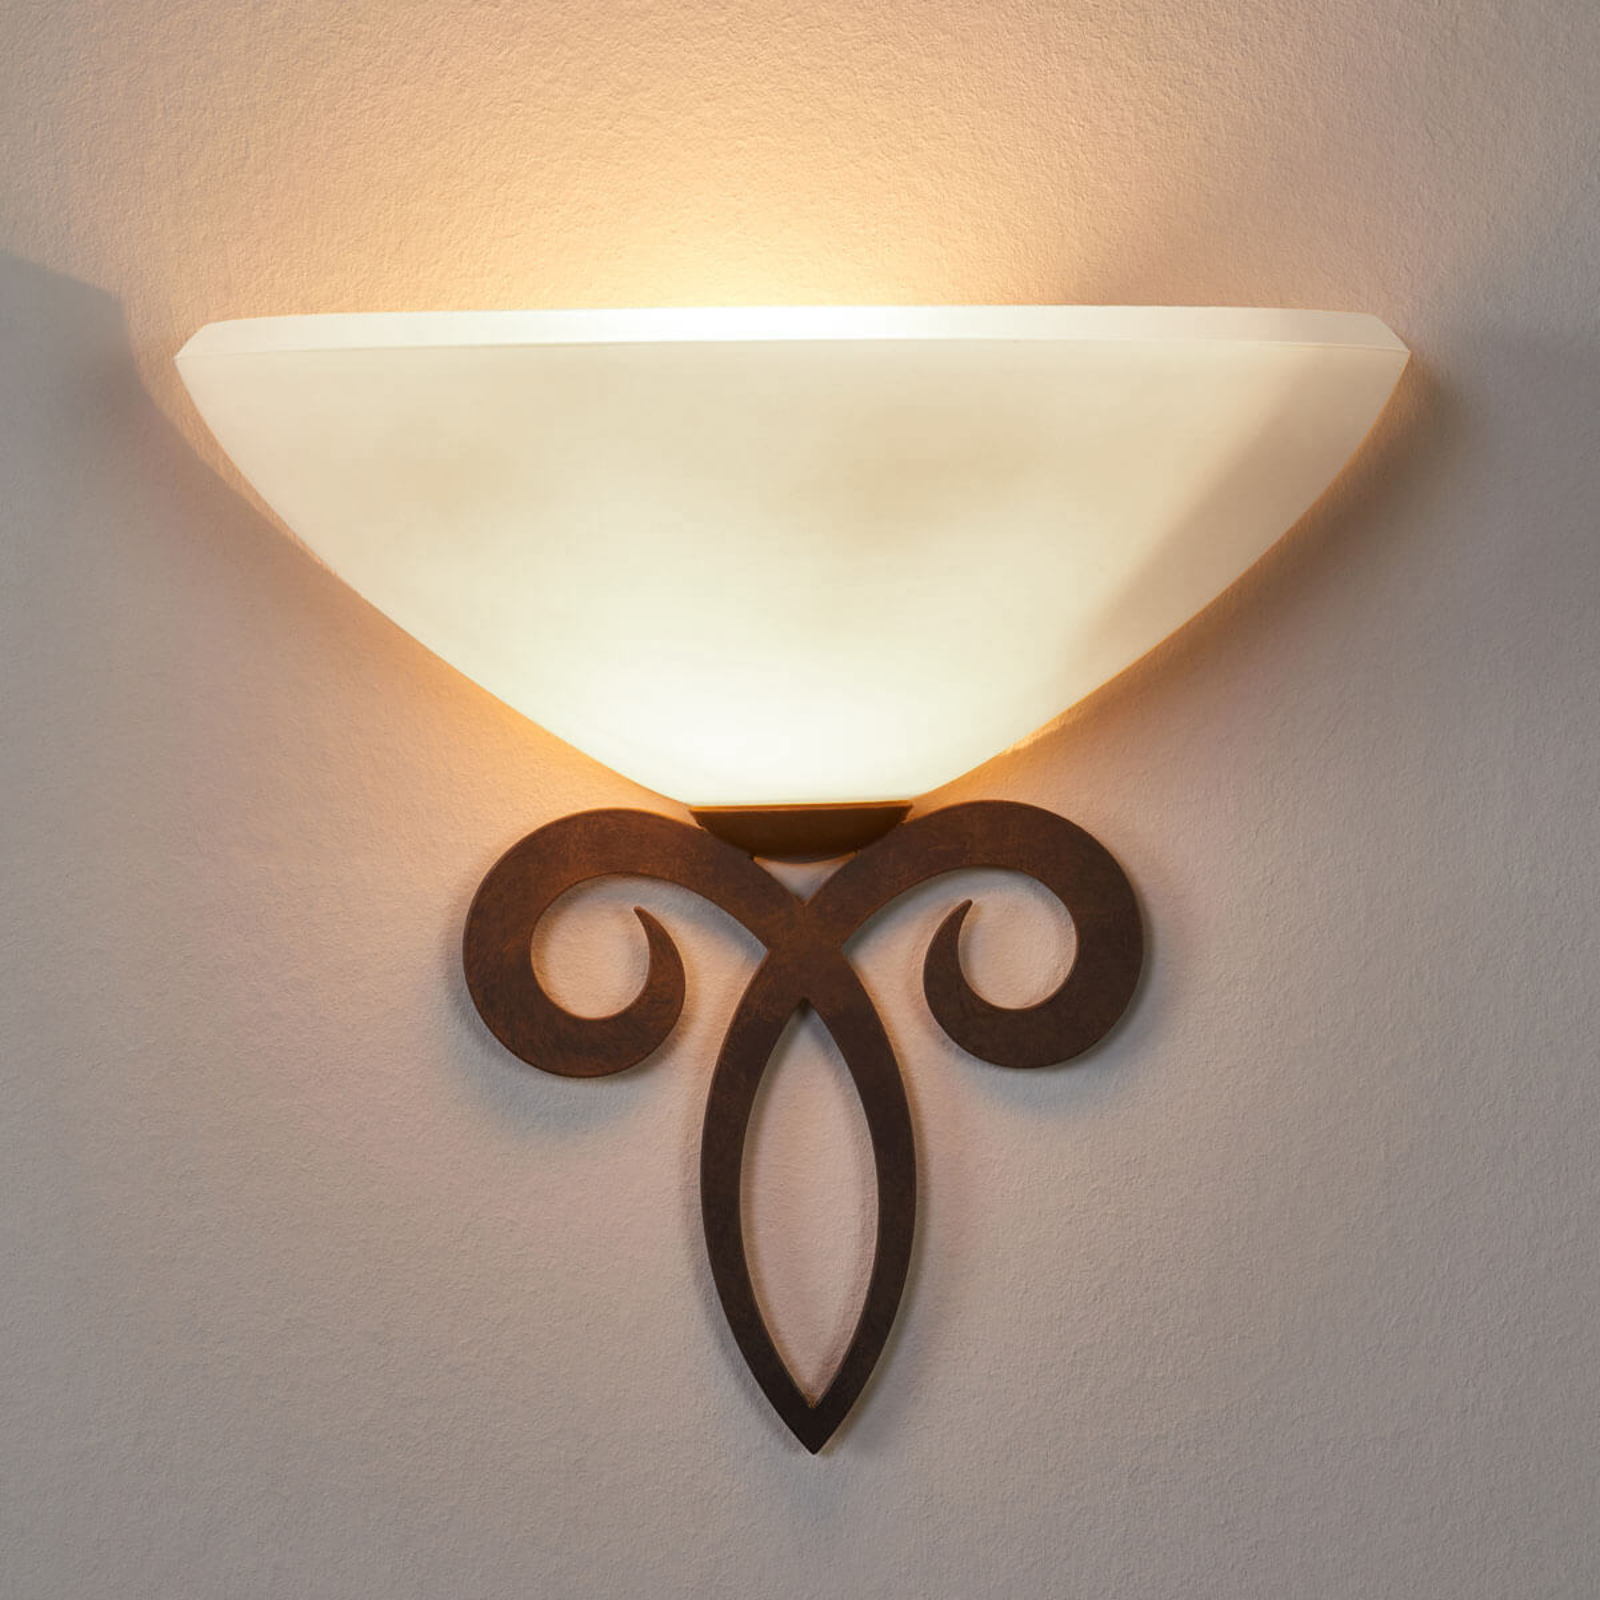 Bestuiver Aan de overkant vergaan Wandlamp Luca in landelijke stijl, lampenkap wit | Lampen24.be